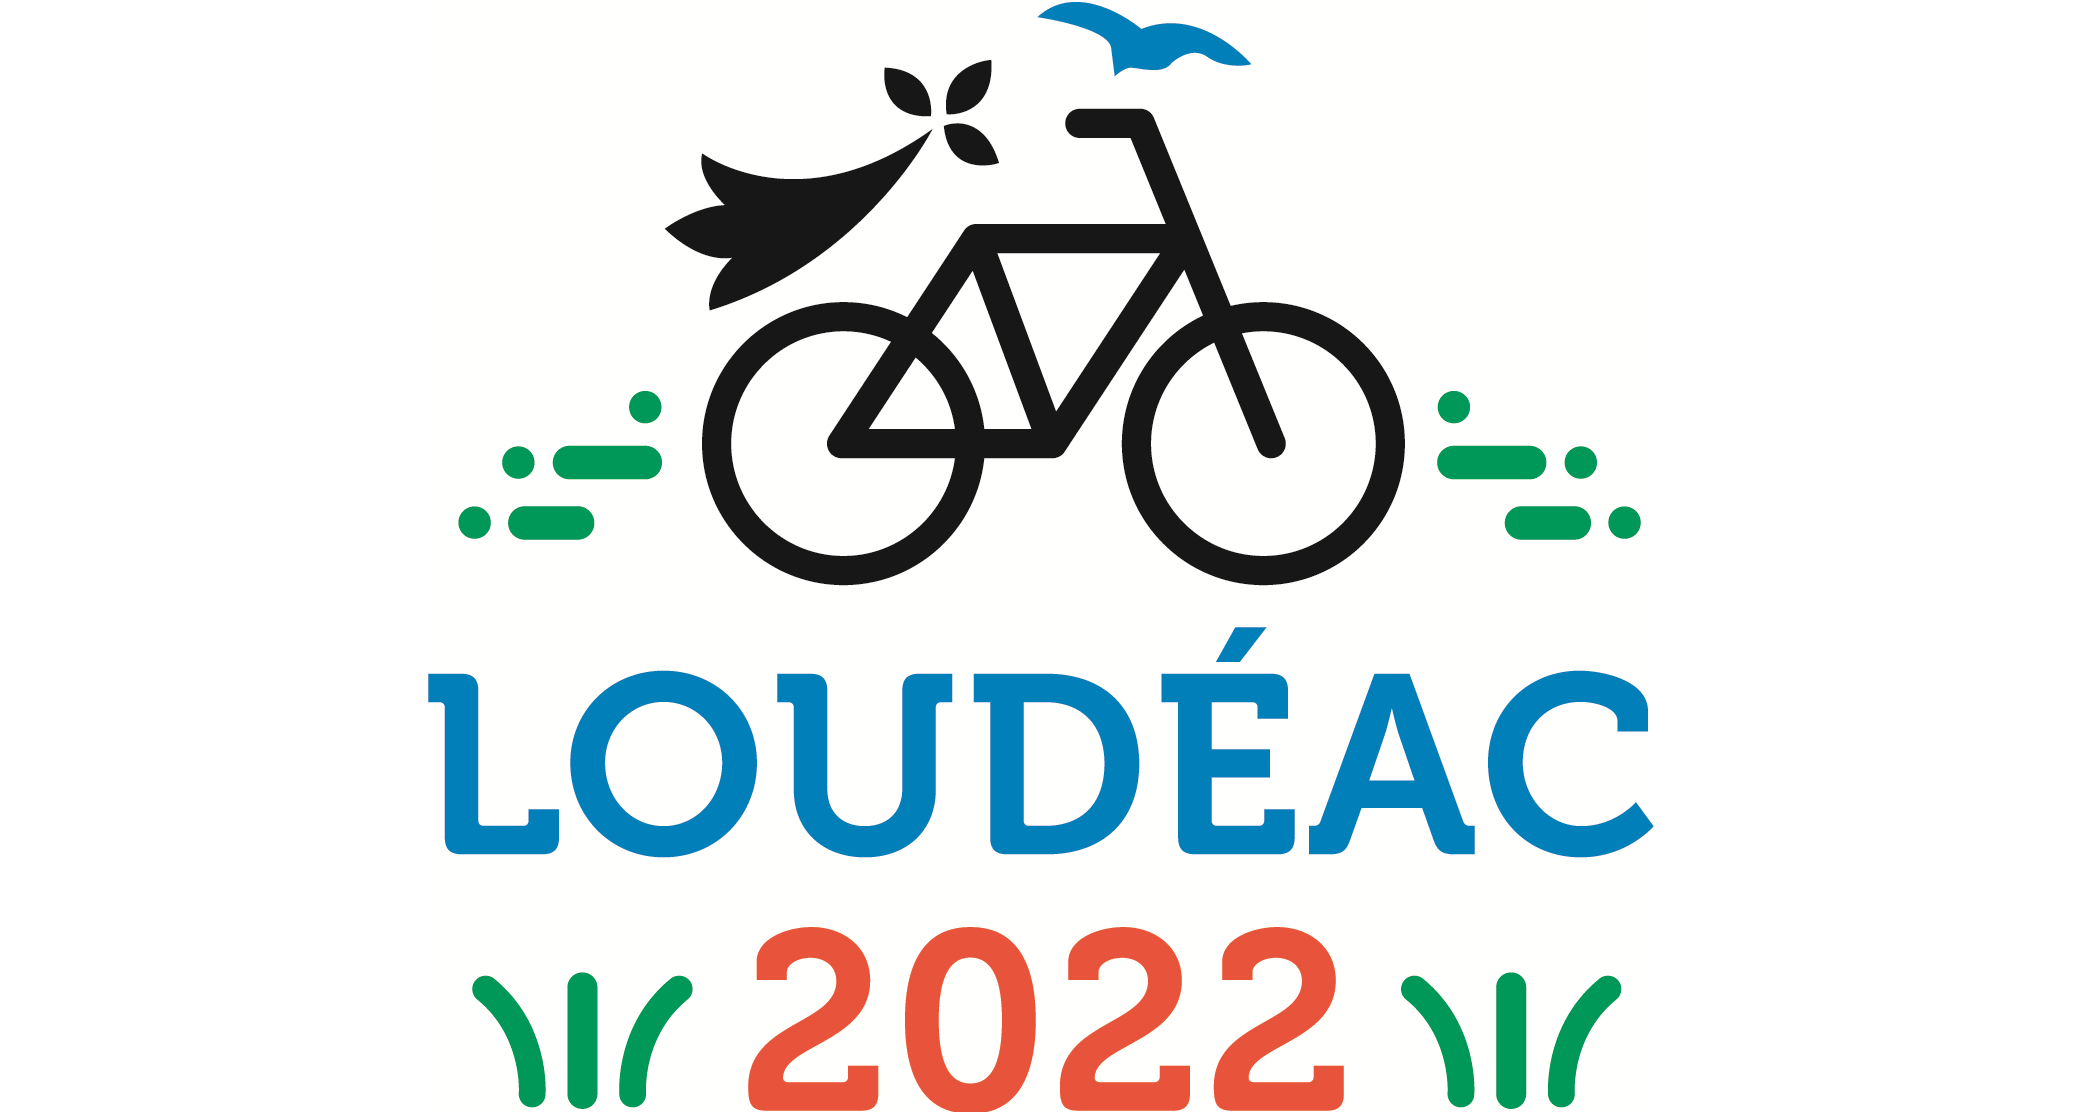 sfloudeac2022 logo2